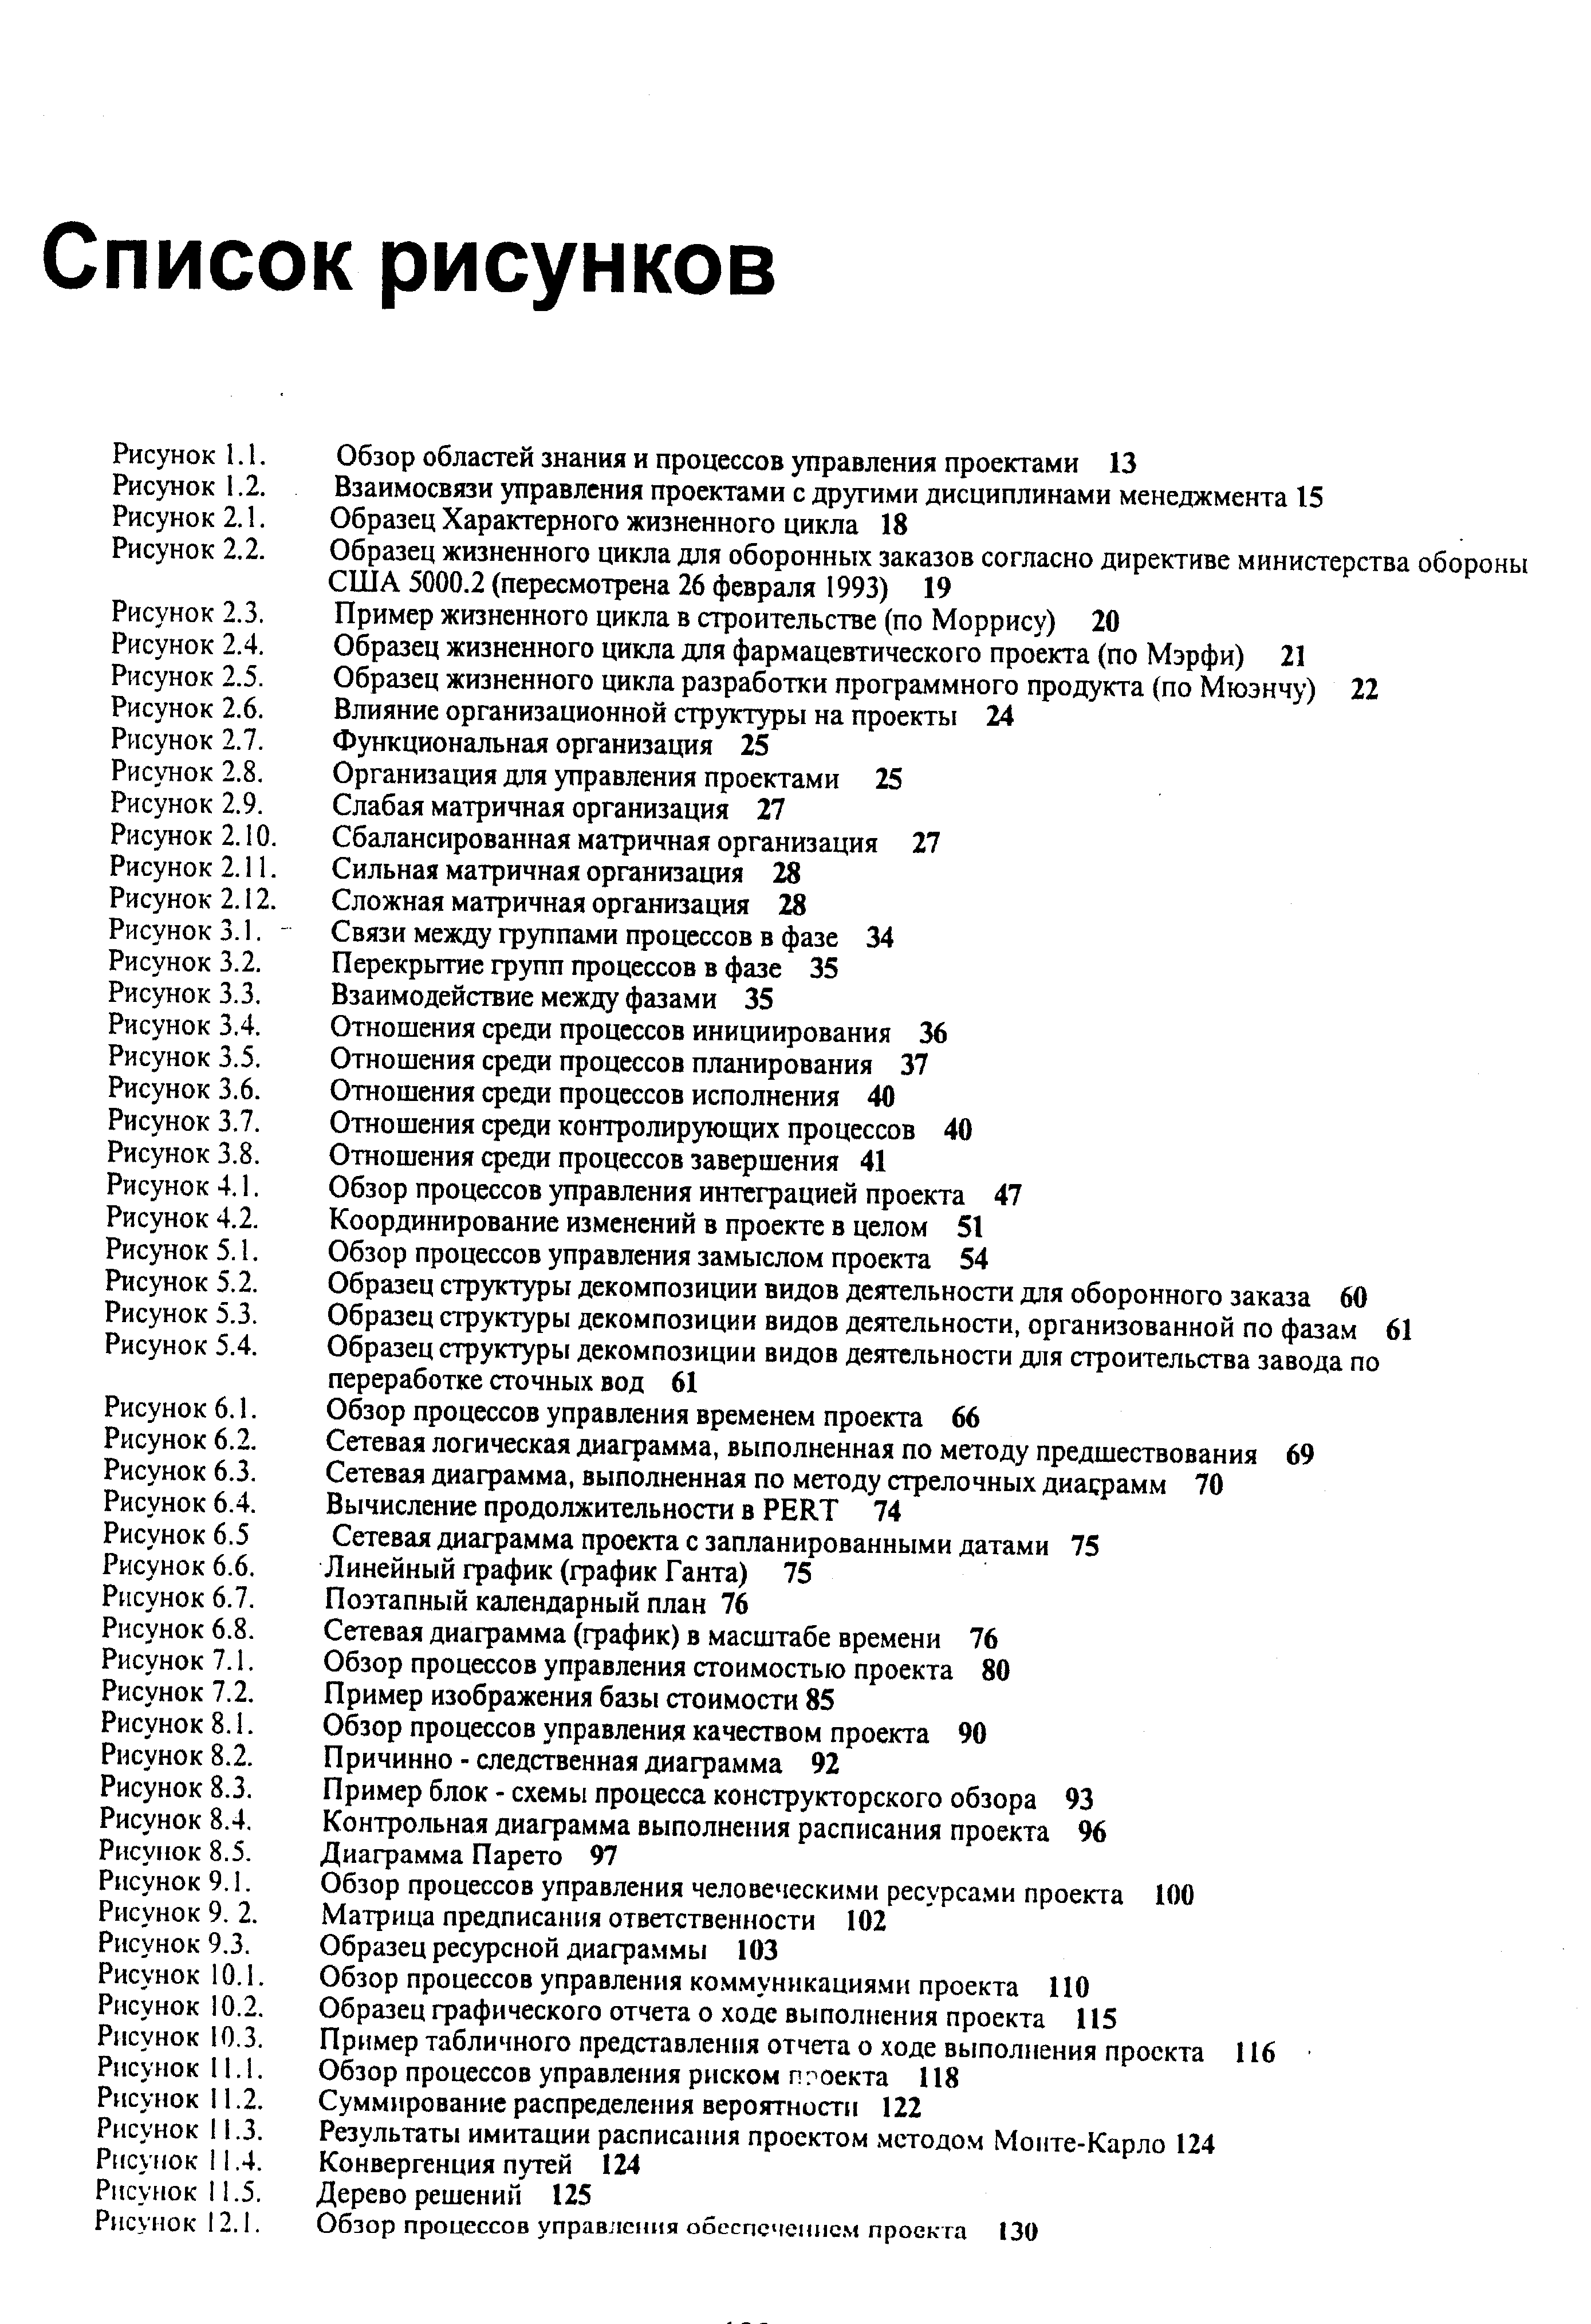 Рисунок 5.2. Образец структуры декомпозиции видов деятельности для оборонного заказа 60
